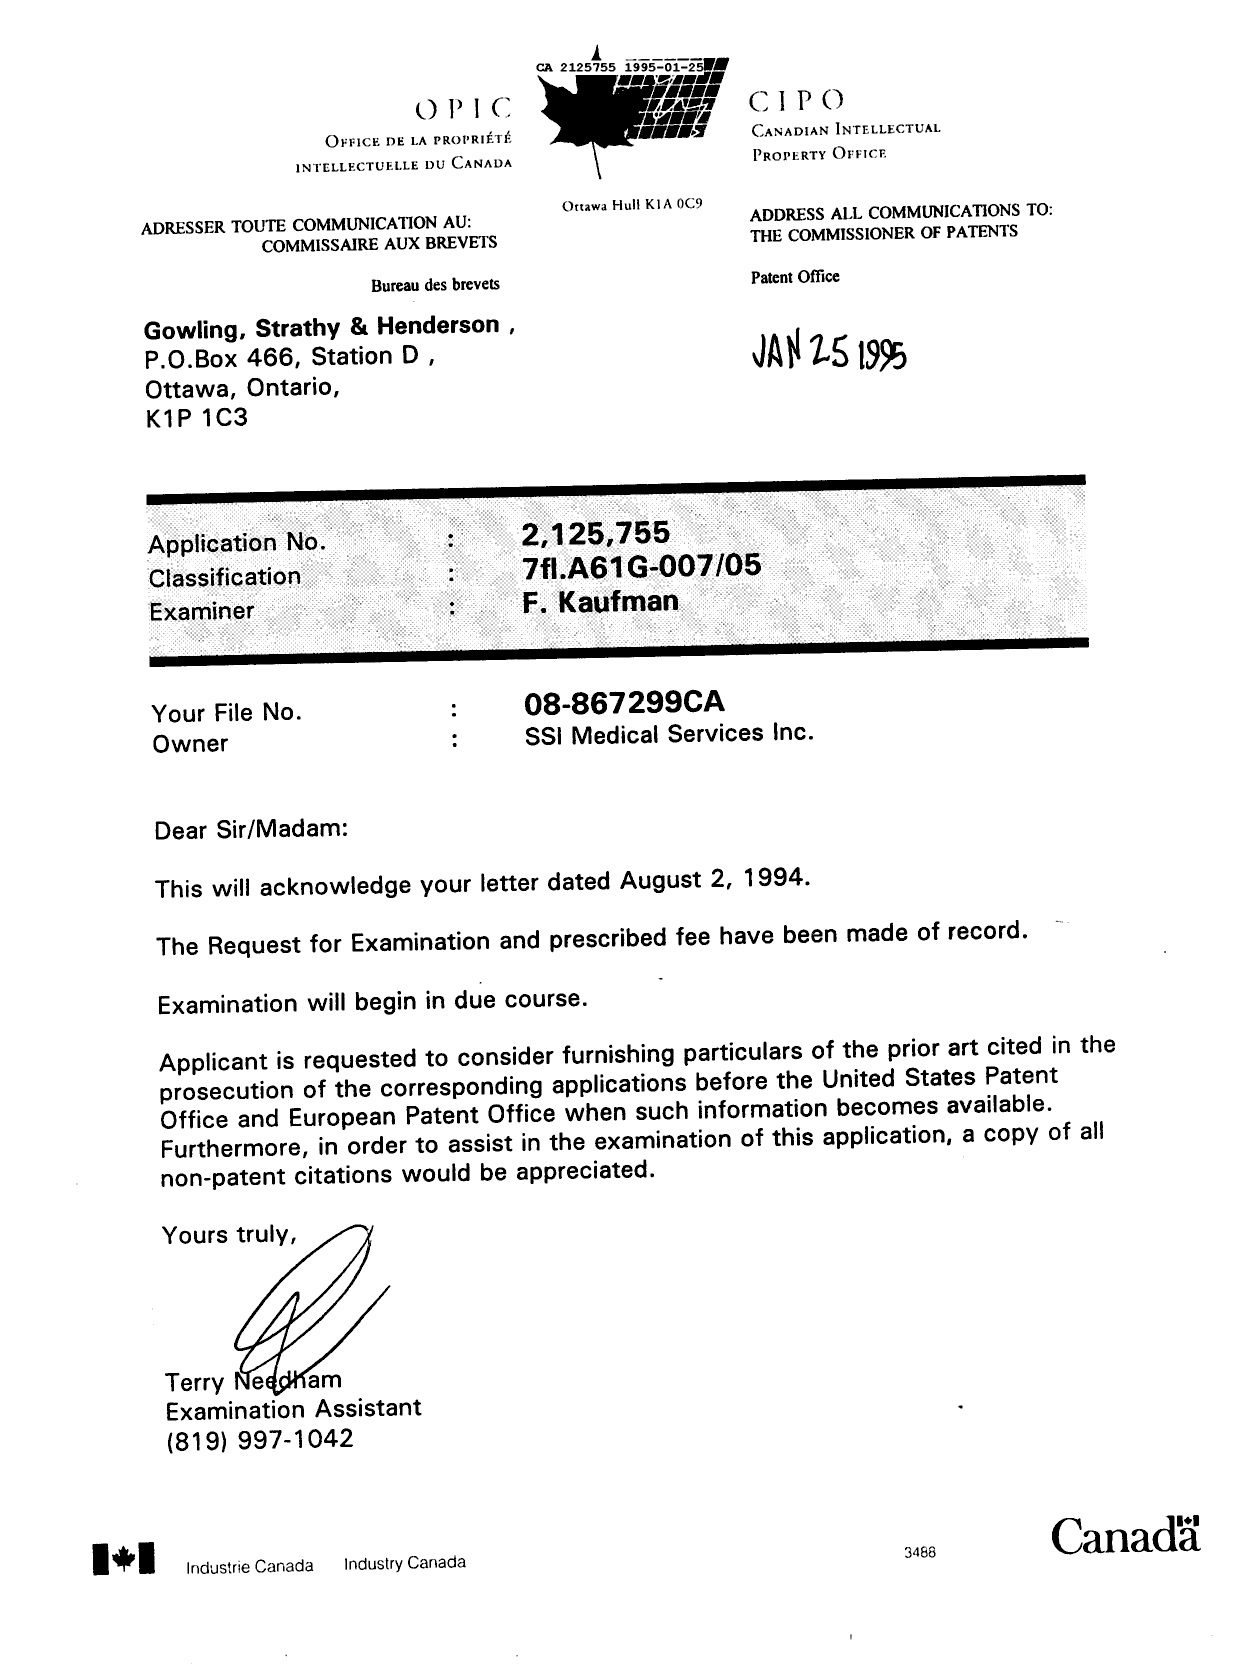 Document de brevet canadien 2125755. Avis d'abandon 19950125. Image 1 de 1